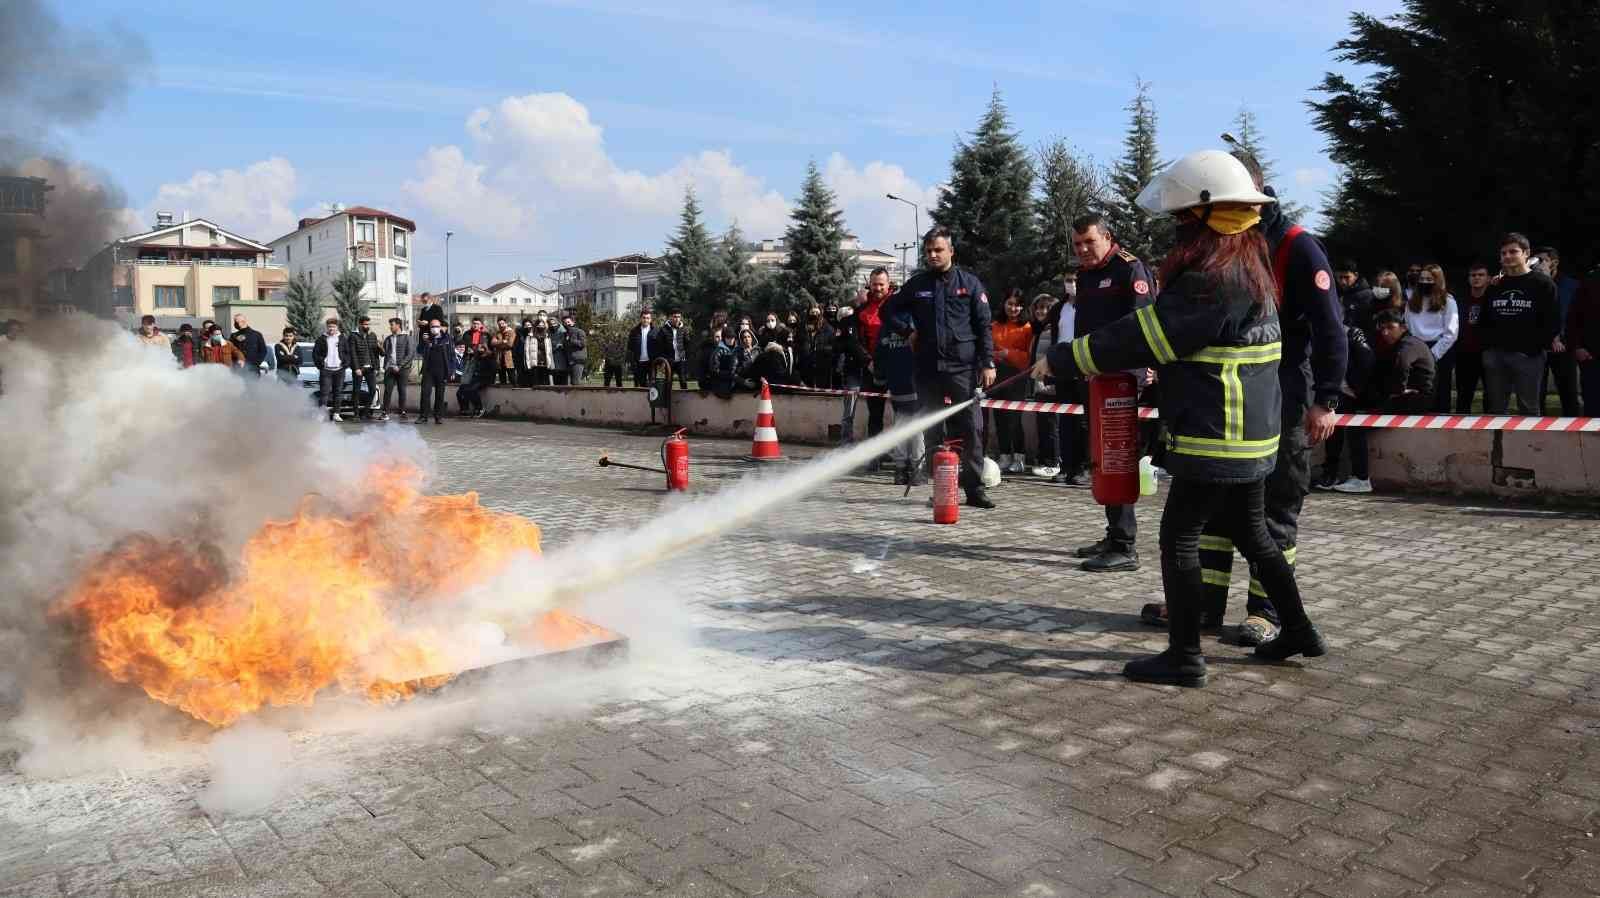 Düzce Belediyesinden öğrencilere yangın söndürme teknikleri #duzce